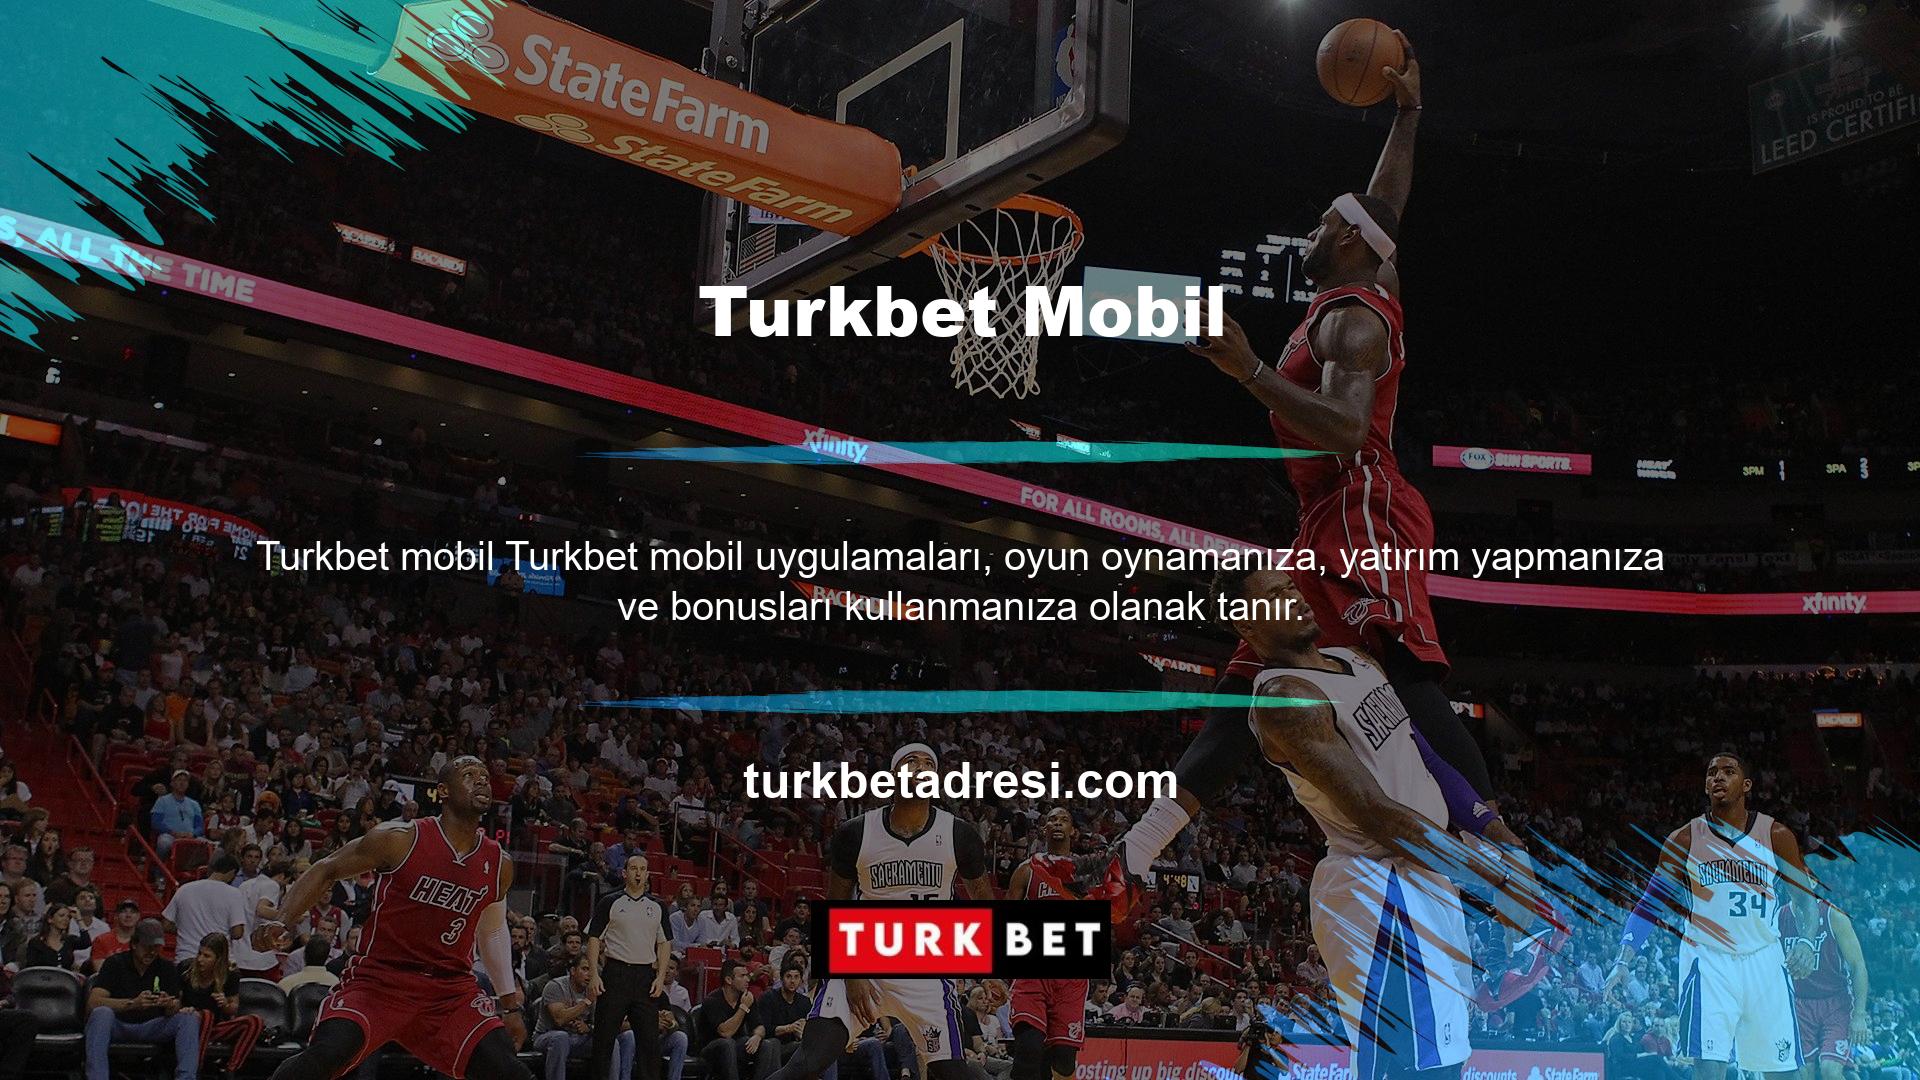 Turkbet mobil uygulamasını kullanmak için, telefonunuzun web sitesinde mevcut web sitesi adresini bulmanız ve web sitesine giriş yapmanız yeterlidir